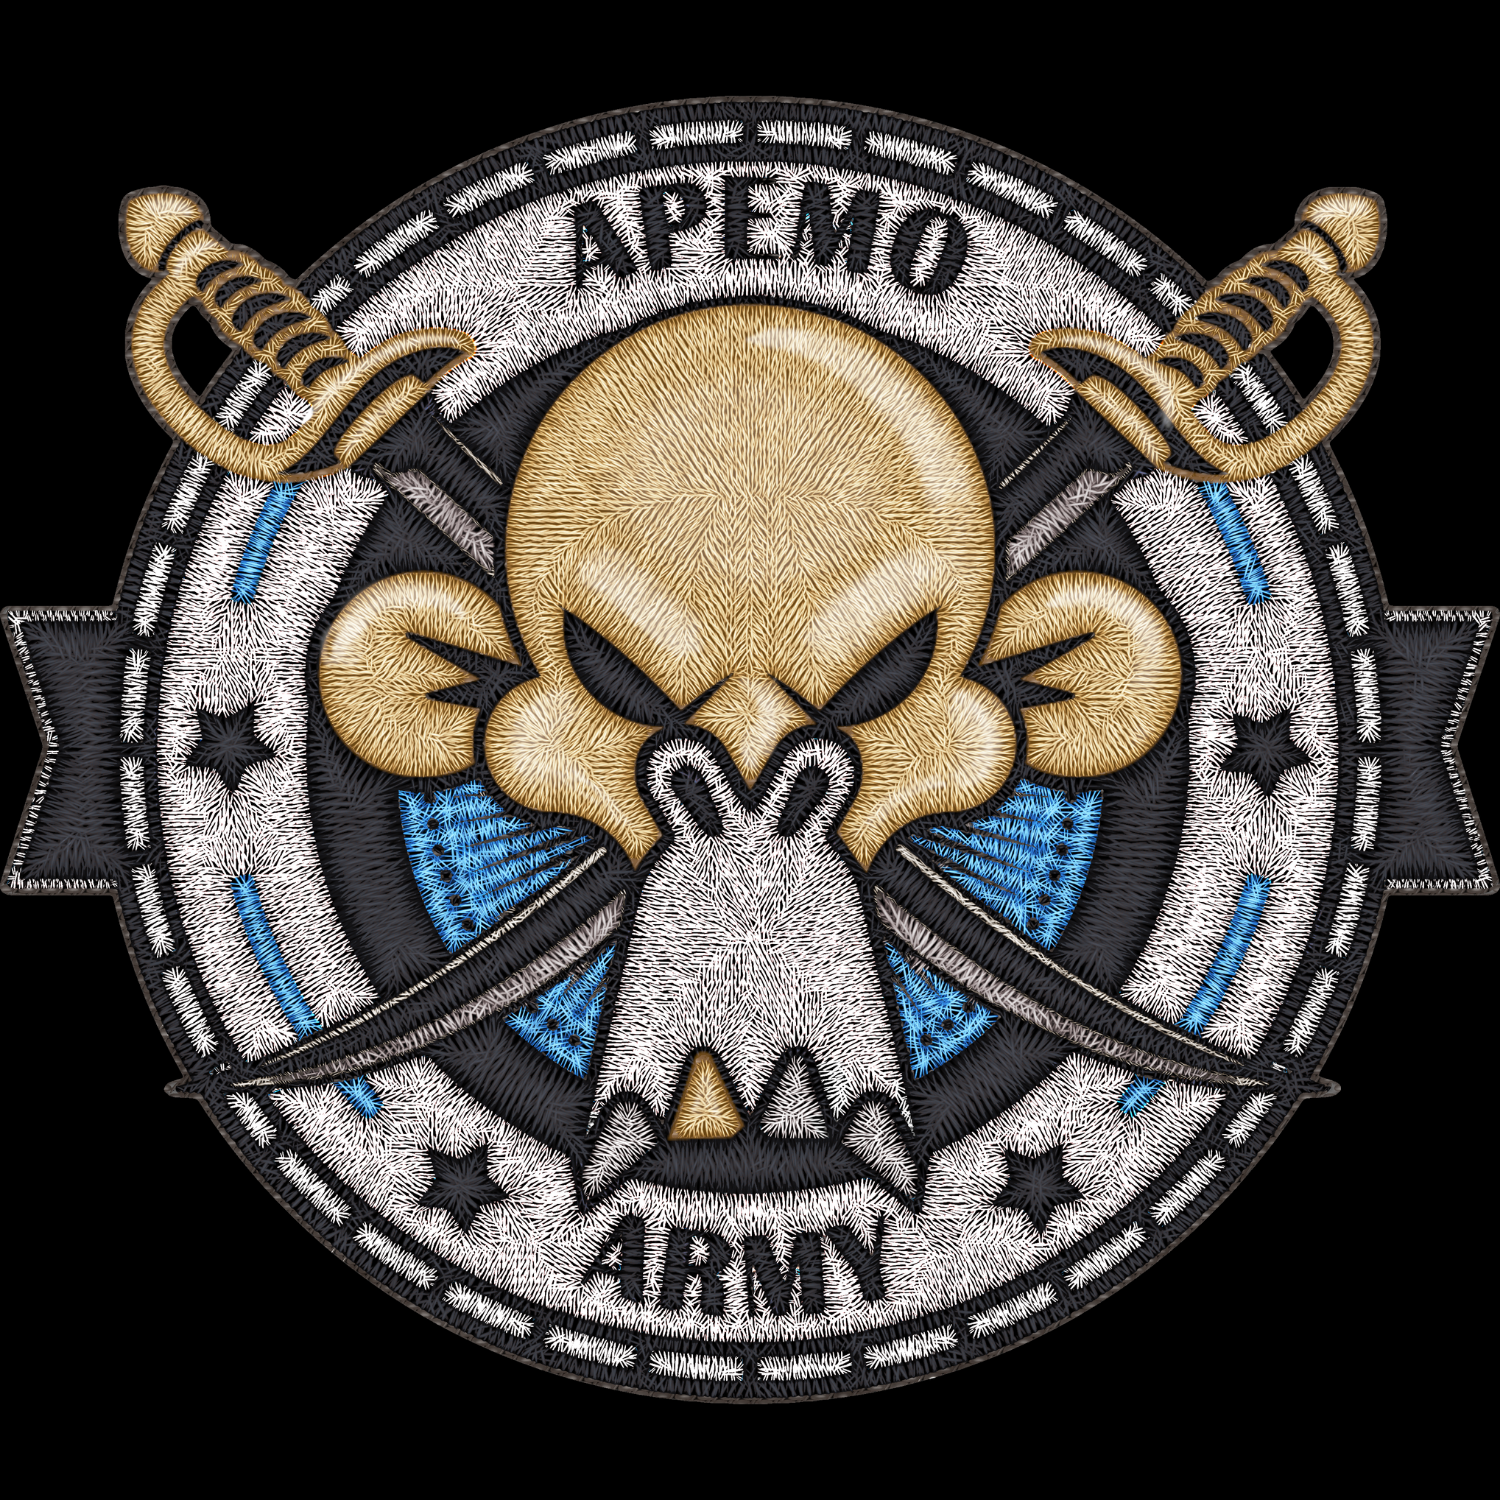 Satoshiverse - The Apemo Army